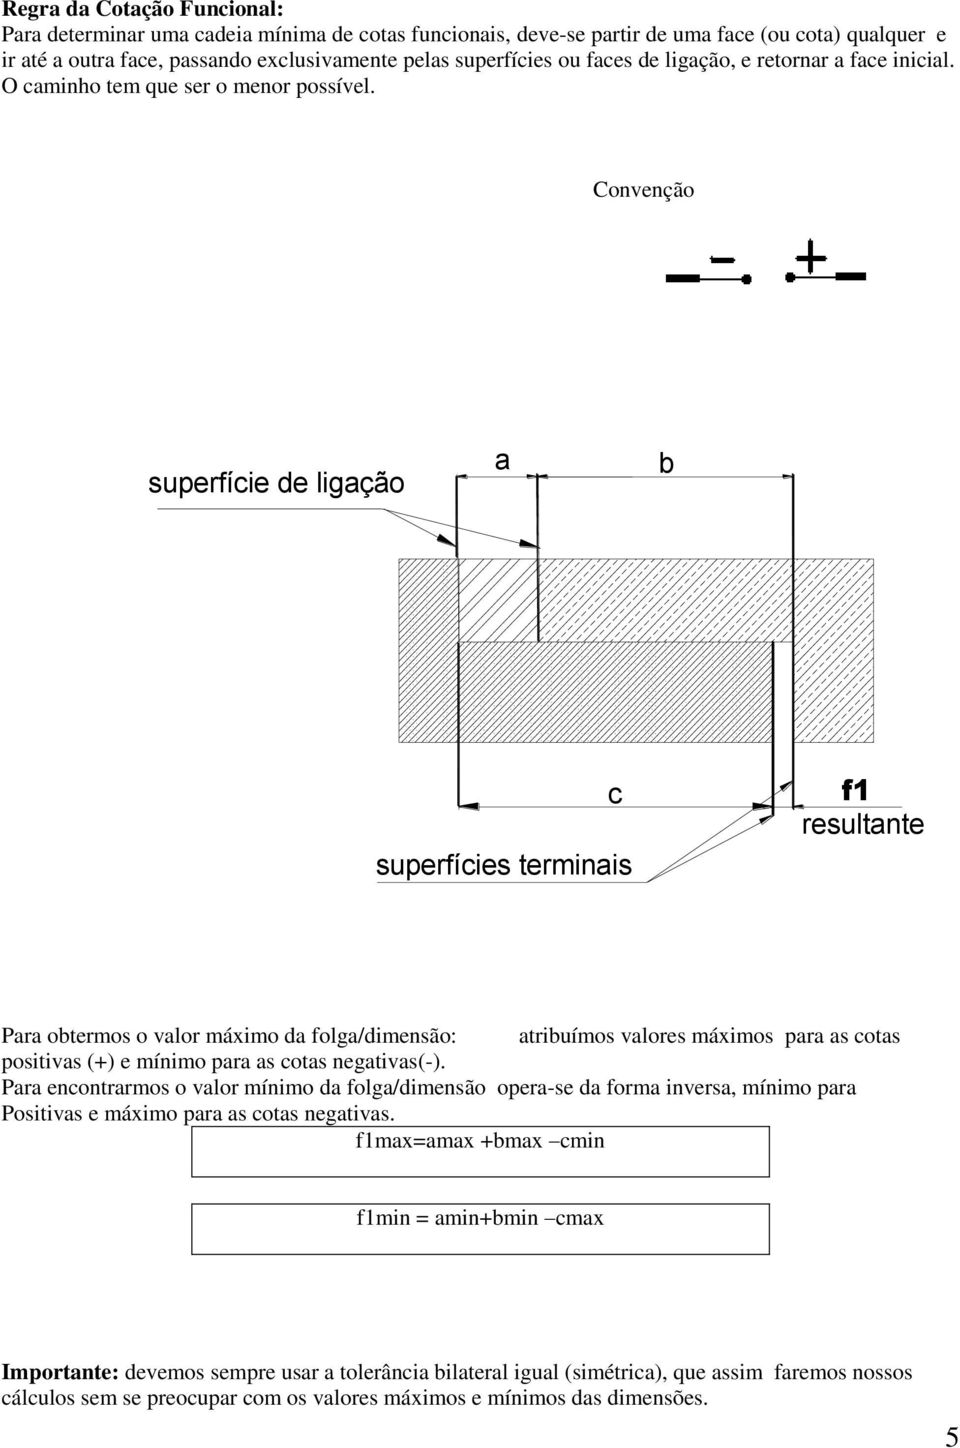 Convenção superfície de ligação a b c superfícies terminais f1 resultante Para obtermos o valor máximo da folga/dimensão: atribuímos valores máximos para as cotas positivas (+) e mínimo para as cotas